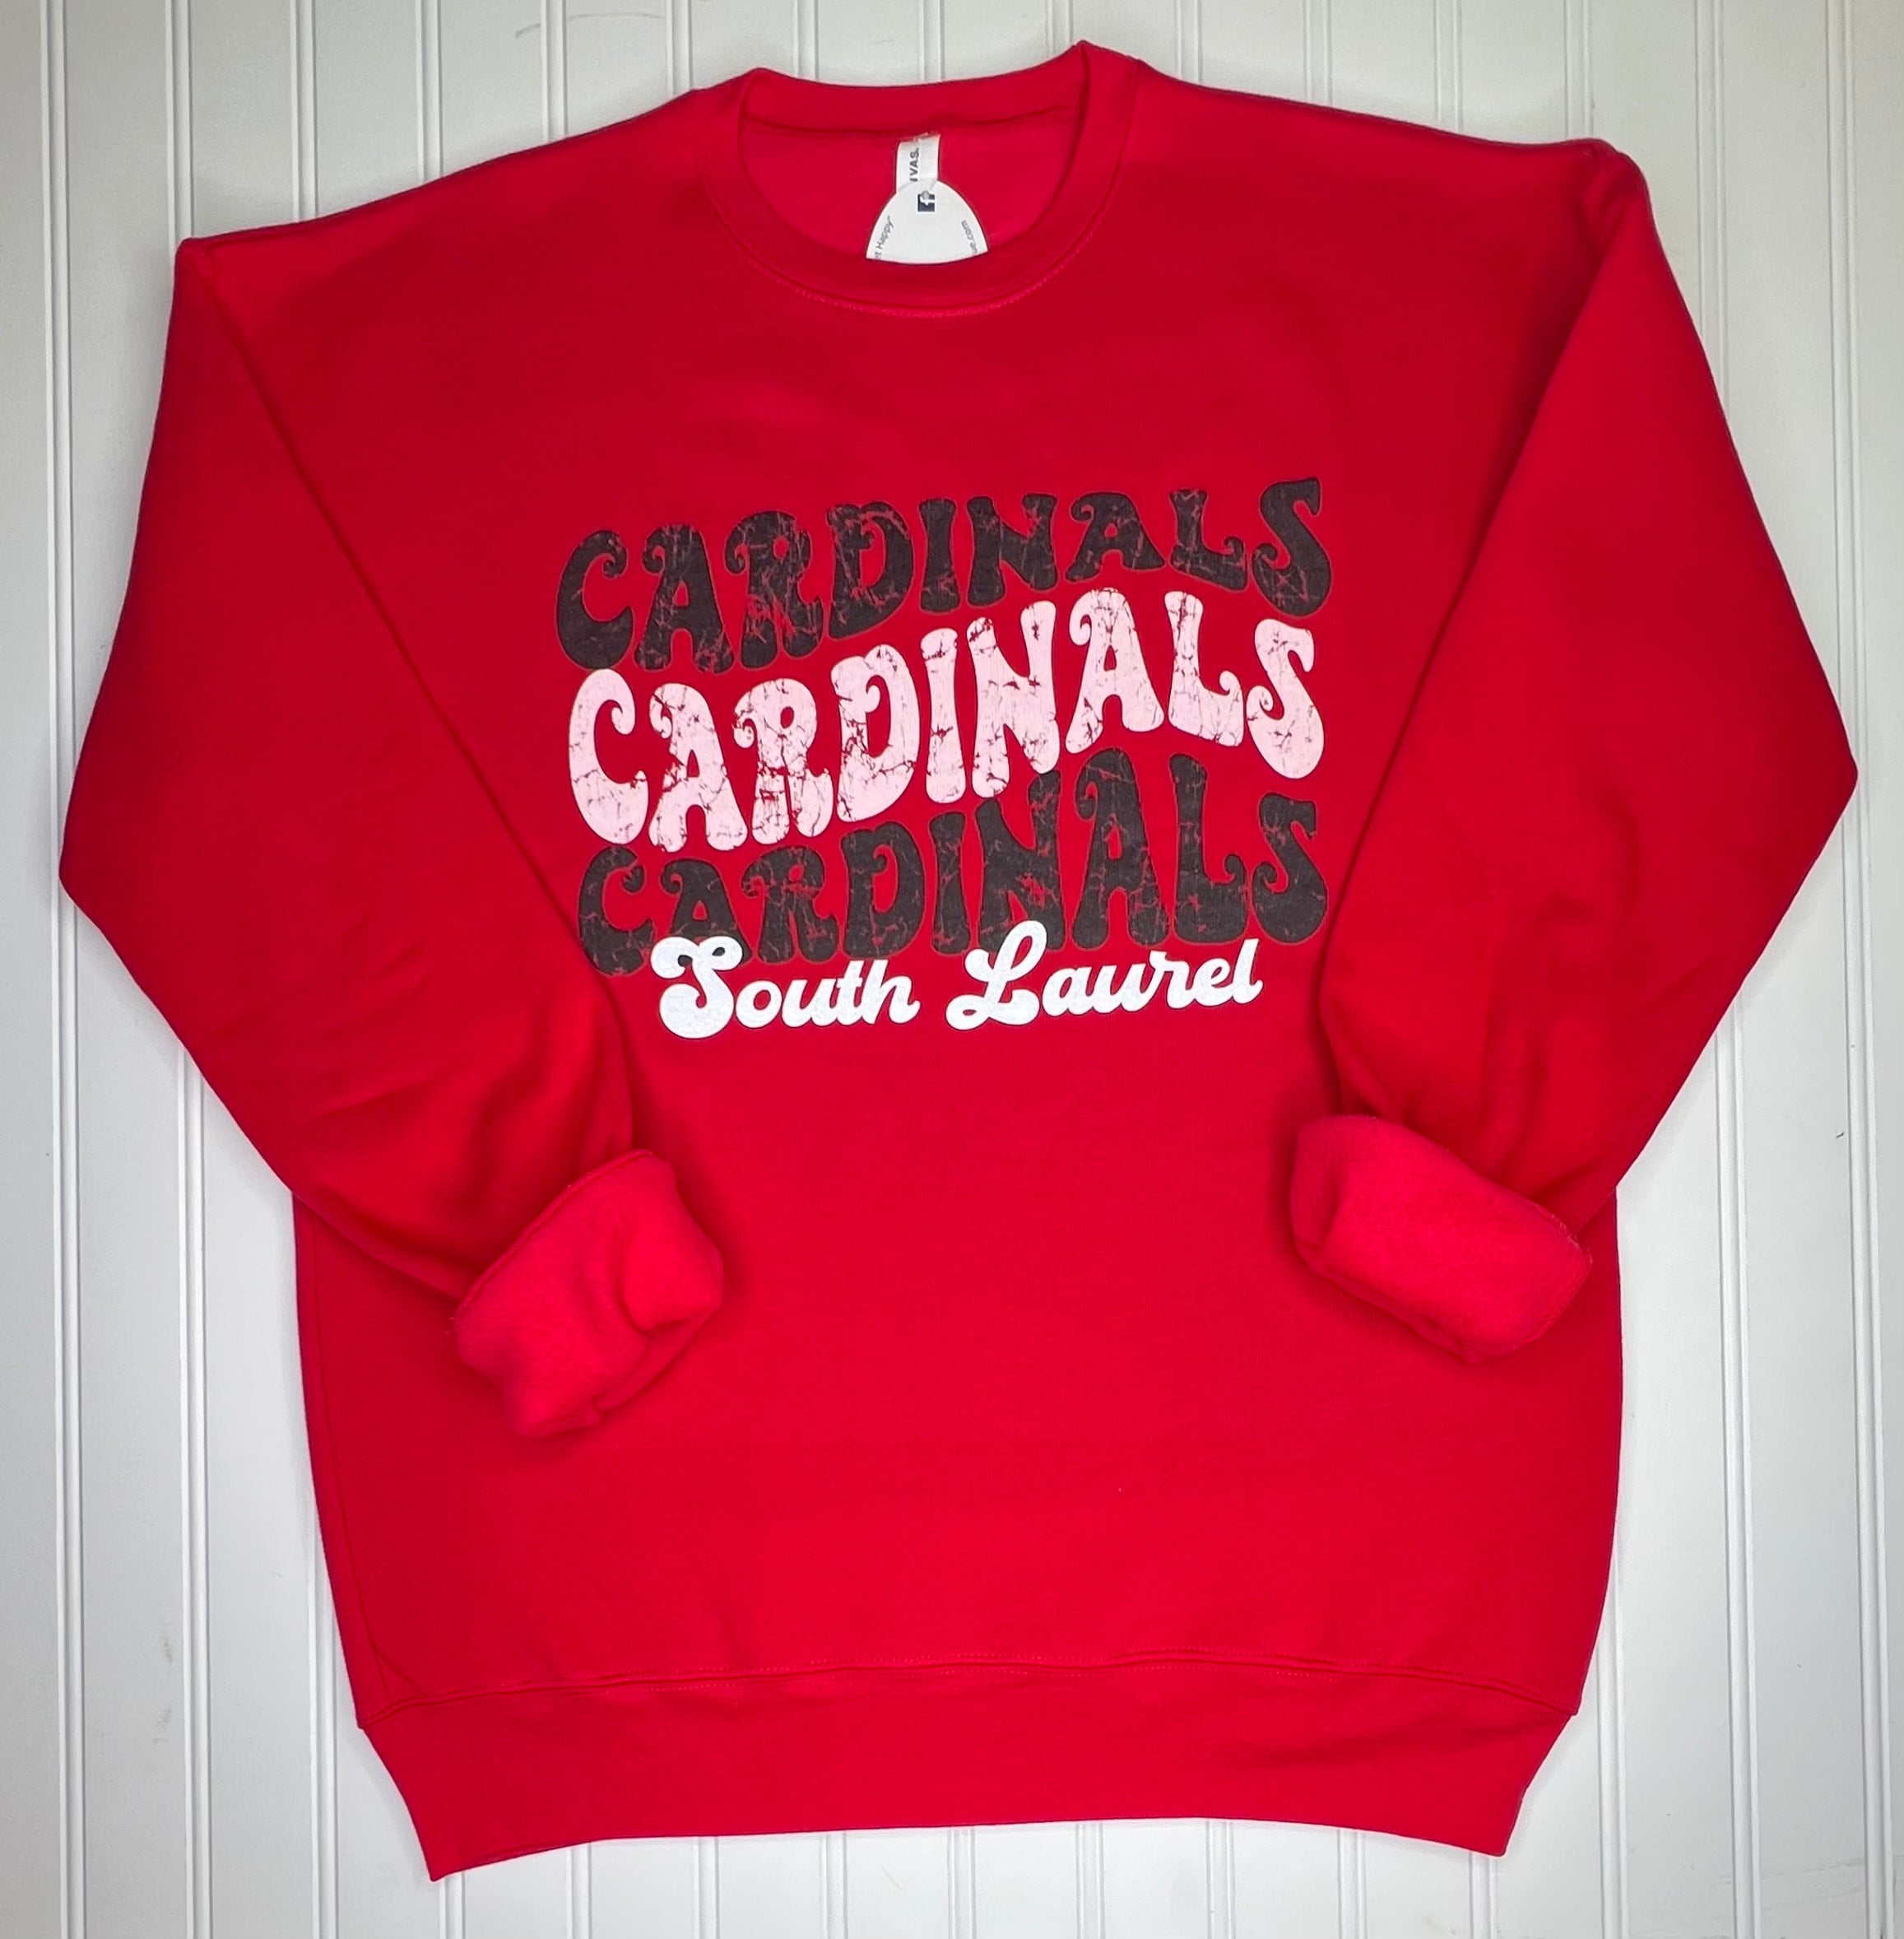 Wavy Line Cardinals Sweatshirt